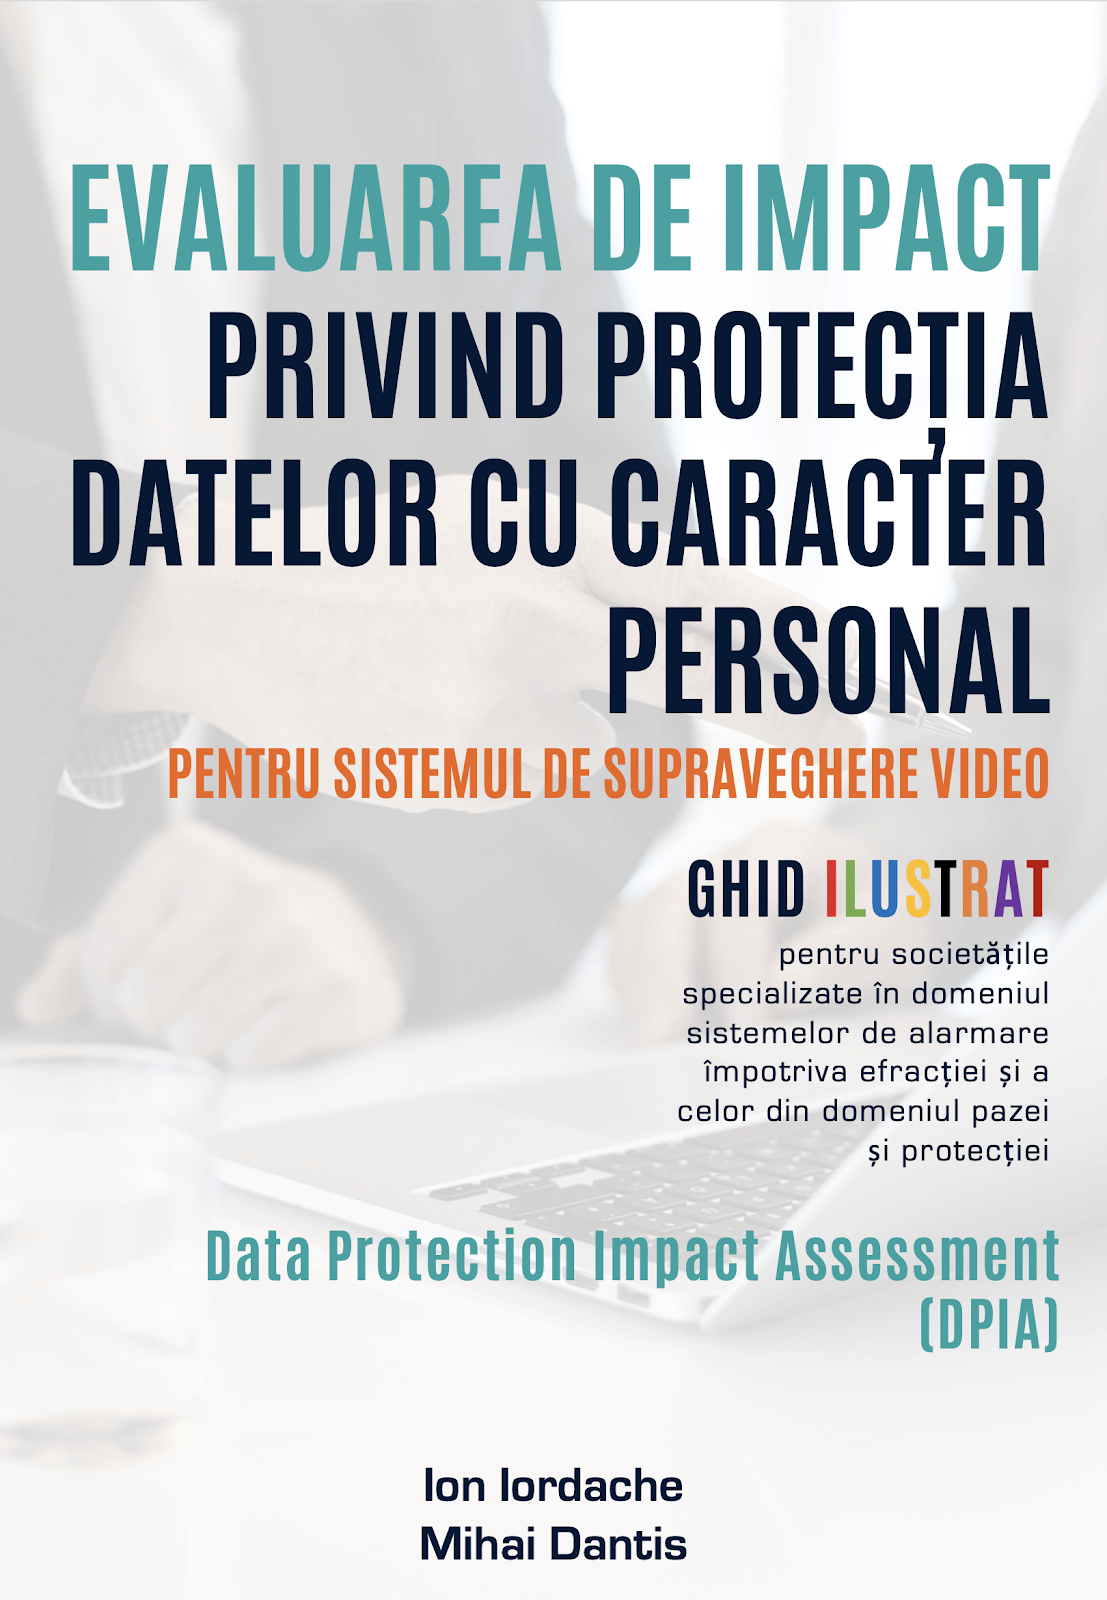 EVALUAREA DE IMPACT PRIVIND PROTECȚIA DATELOR CU CARACTER PERSONAL PENTRU SISTEMUL DE SUPRAVEGHERE VIDEO